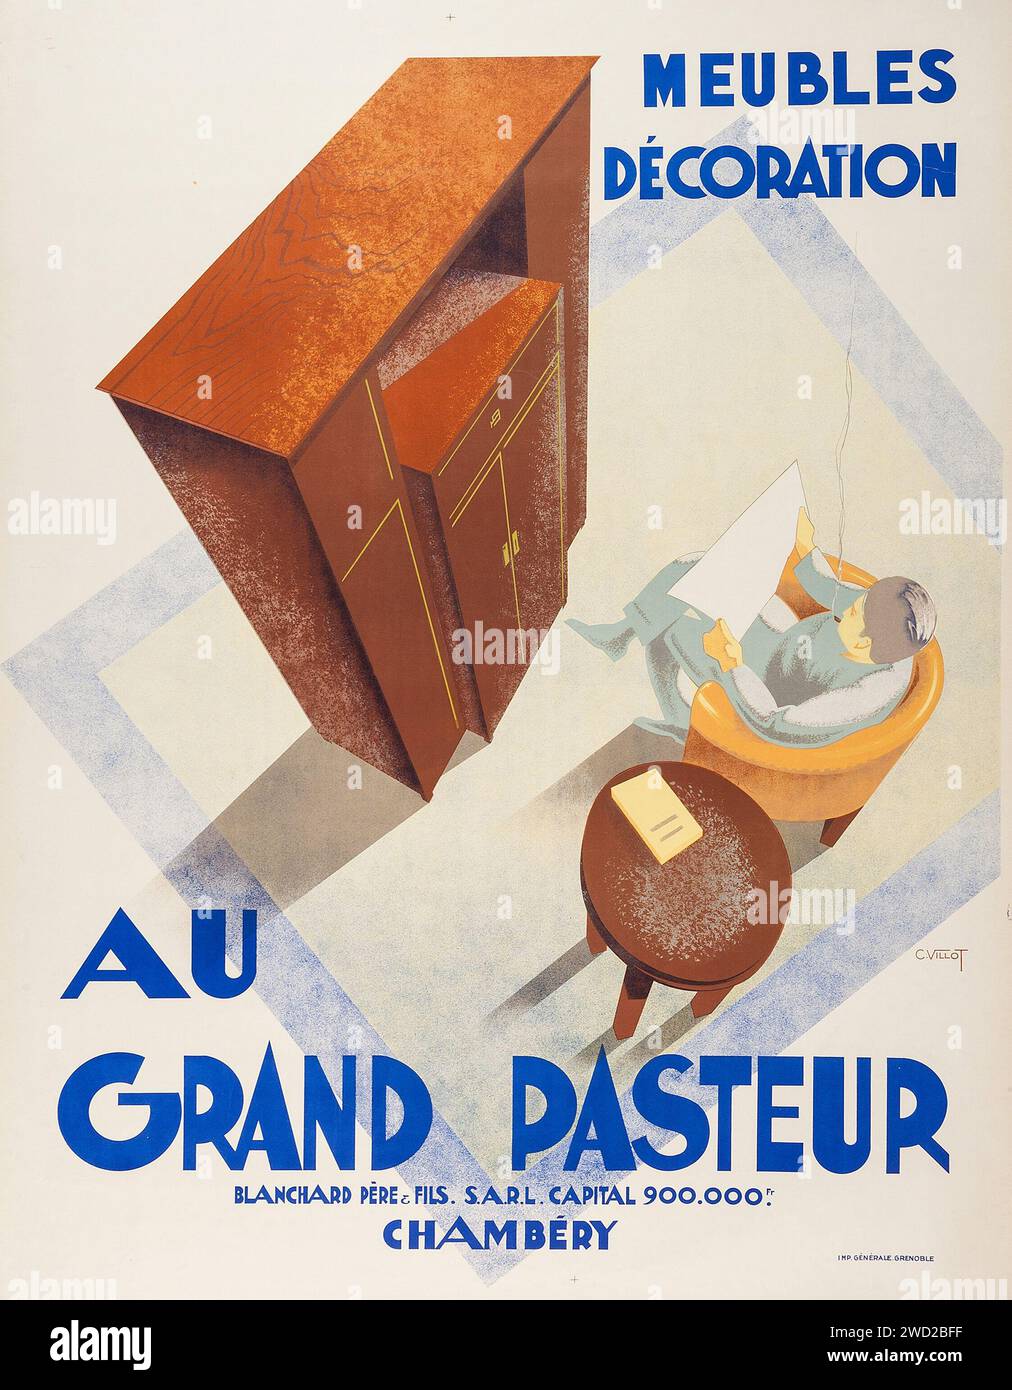 Au Grand Pasteur, decorazione Meubles, Chambery - poster pubblicitario (1935). Pubblicità francese per mobili - poster Art Deco francese. Foto Stock